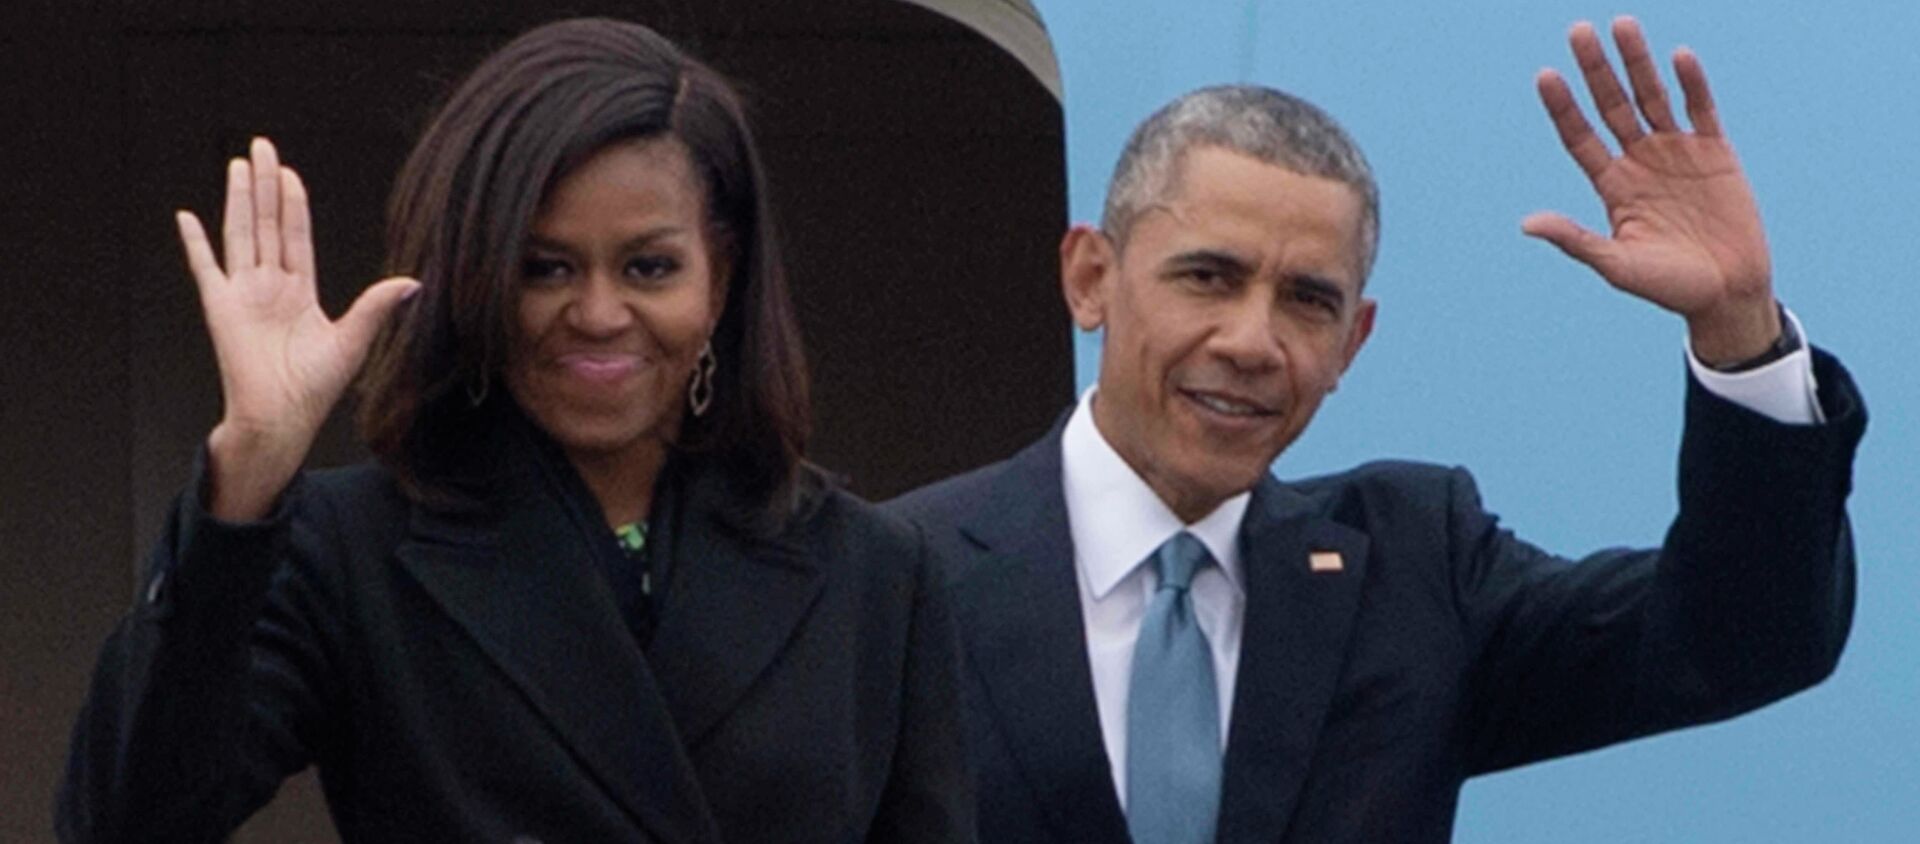 US President Barack Obama (R) and First Lady Michelle Obama (L) - Sputnik International, 1920, 01.03.2017